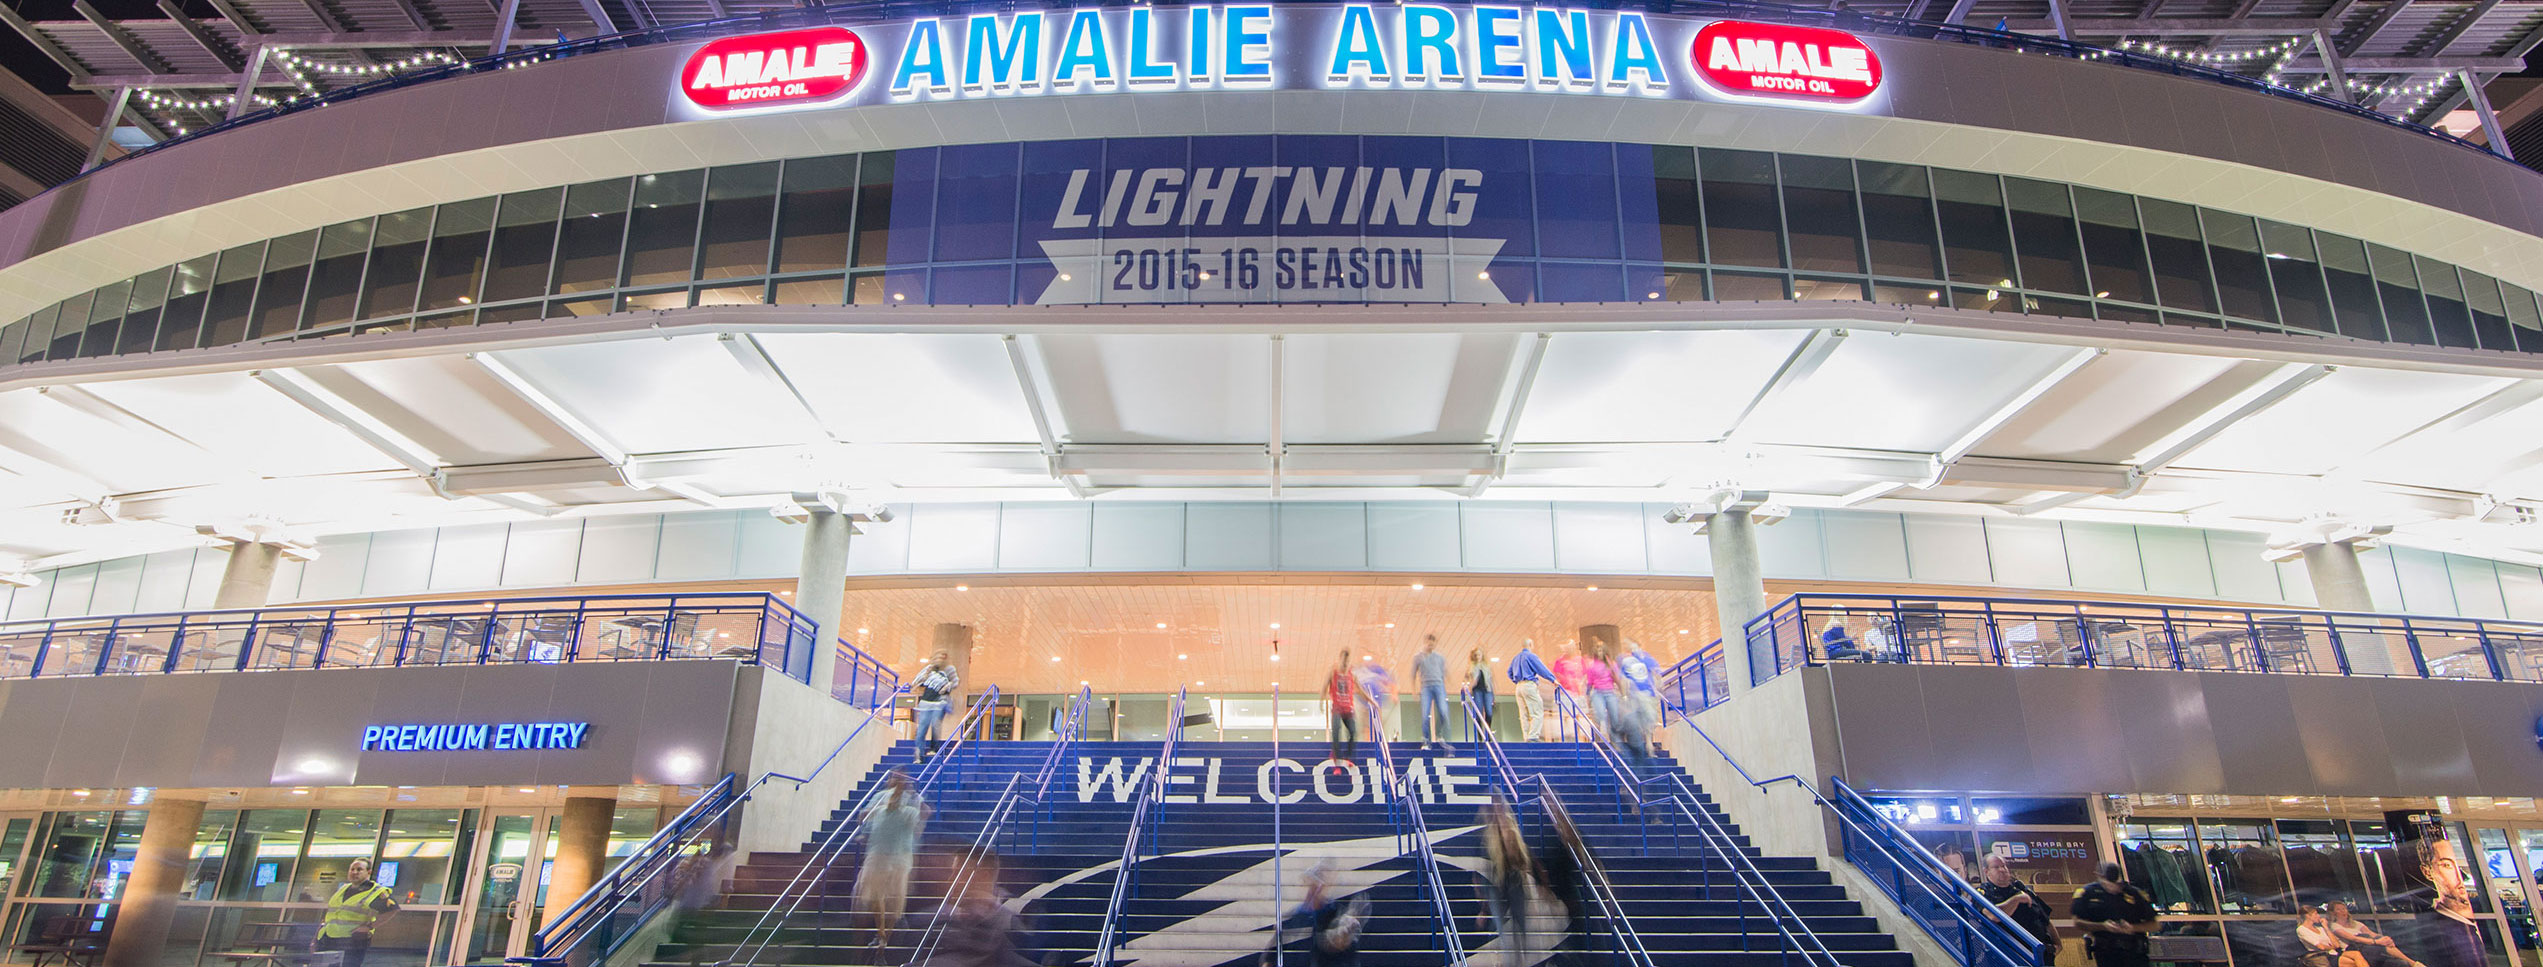 Amalie Arena main entrance